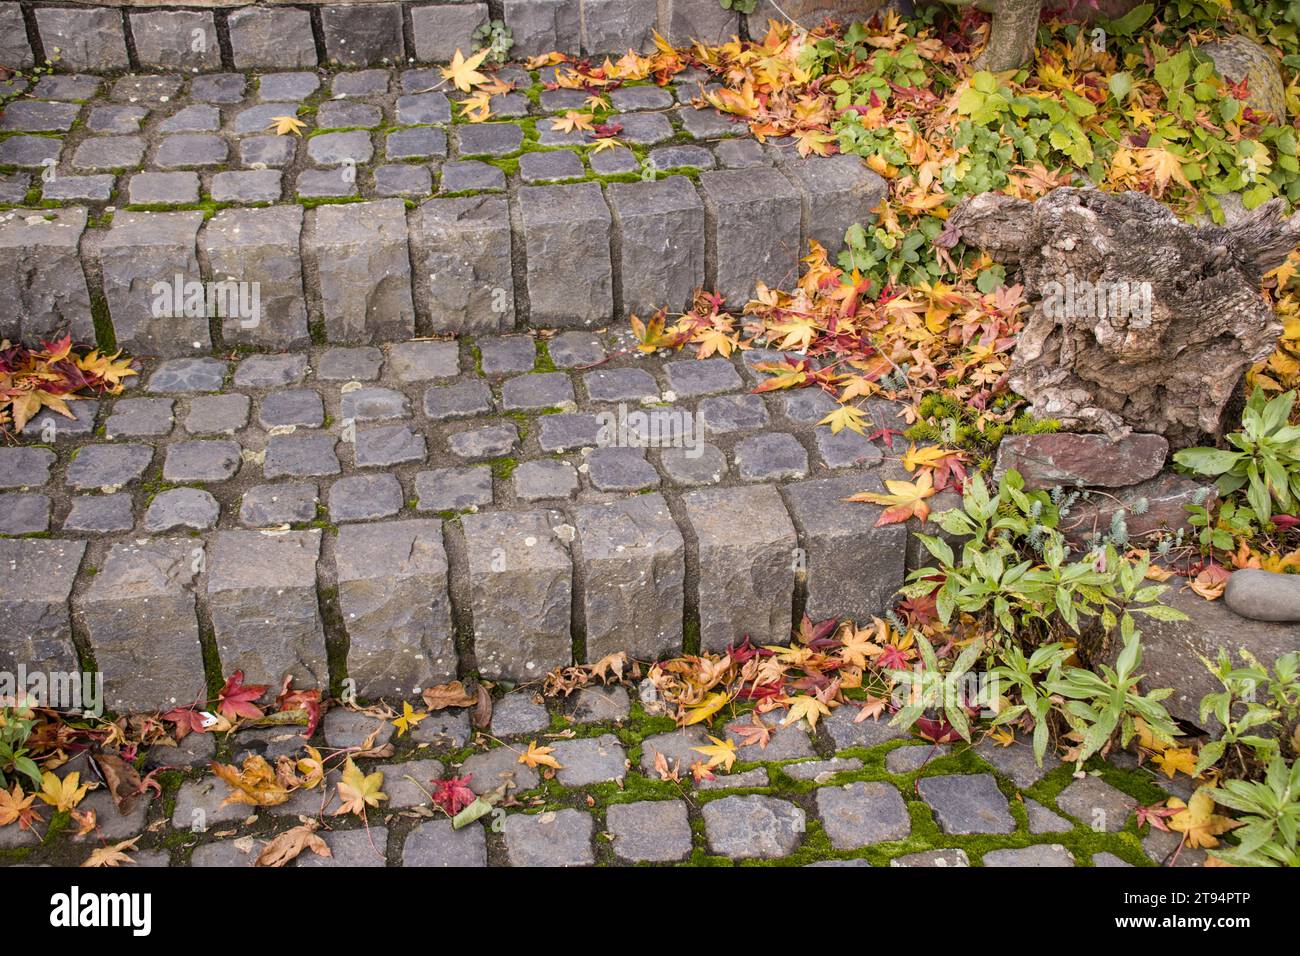 Herbstlaub auf einer Treppe aus Basalt-Pflastersteinen Foto Stock